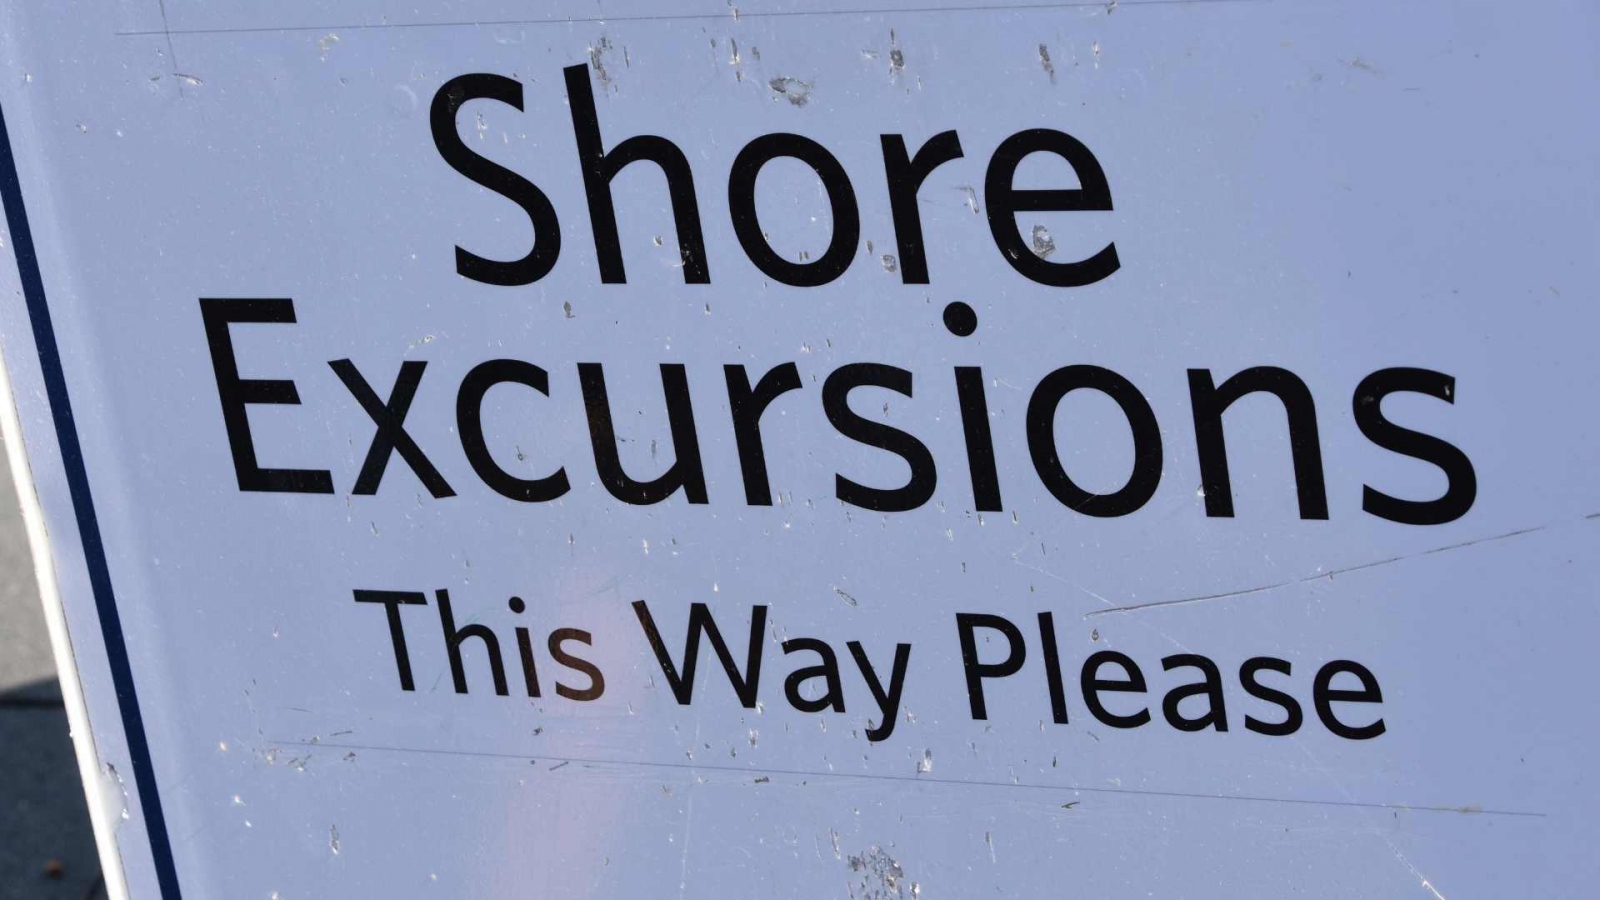 Shore excursion plate